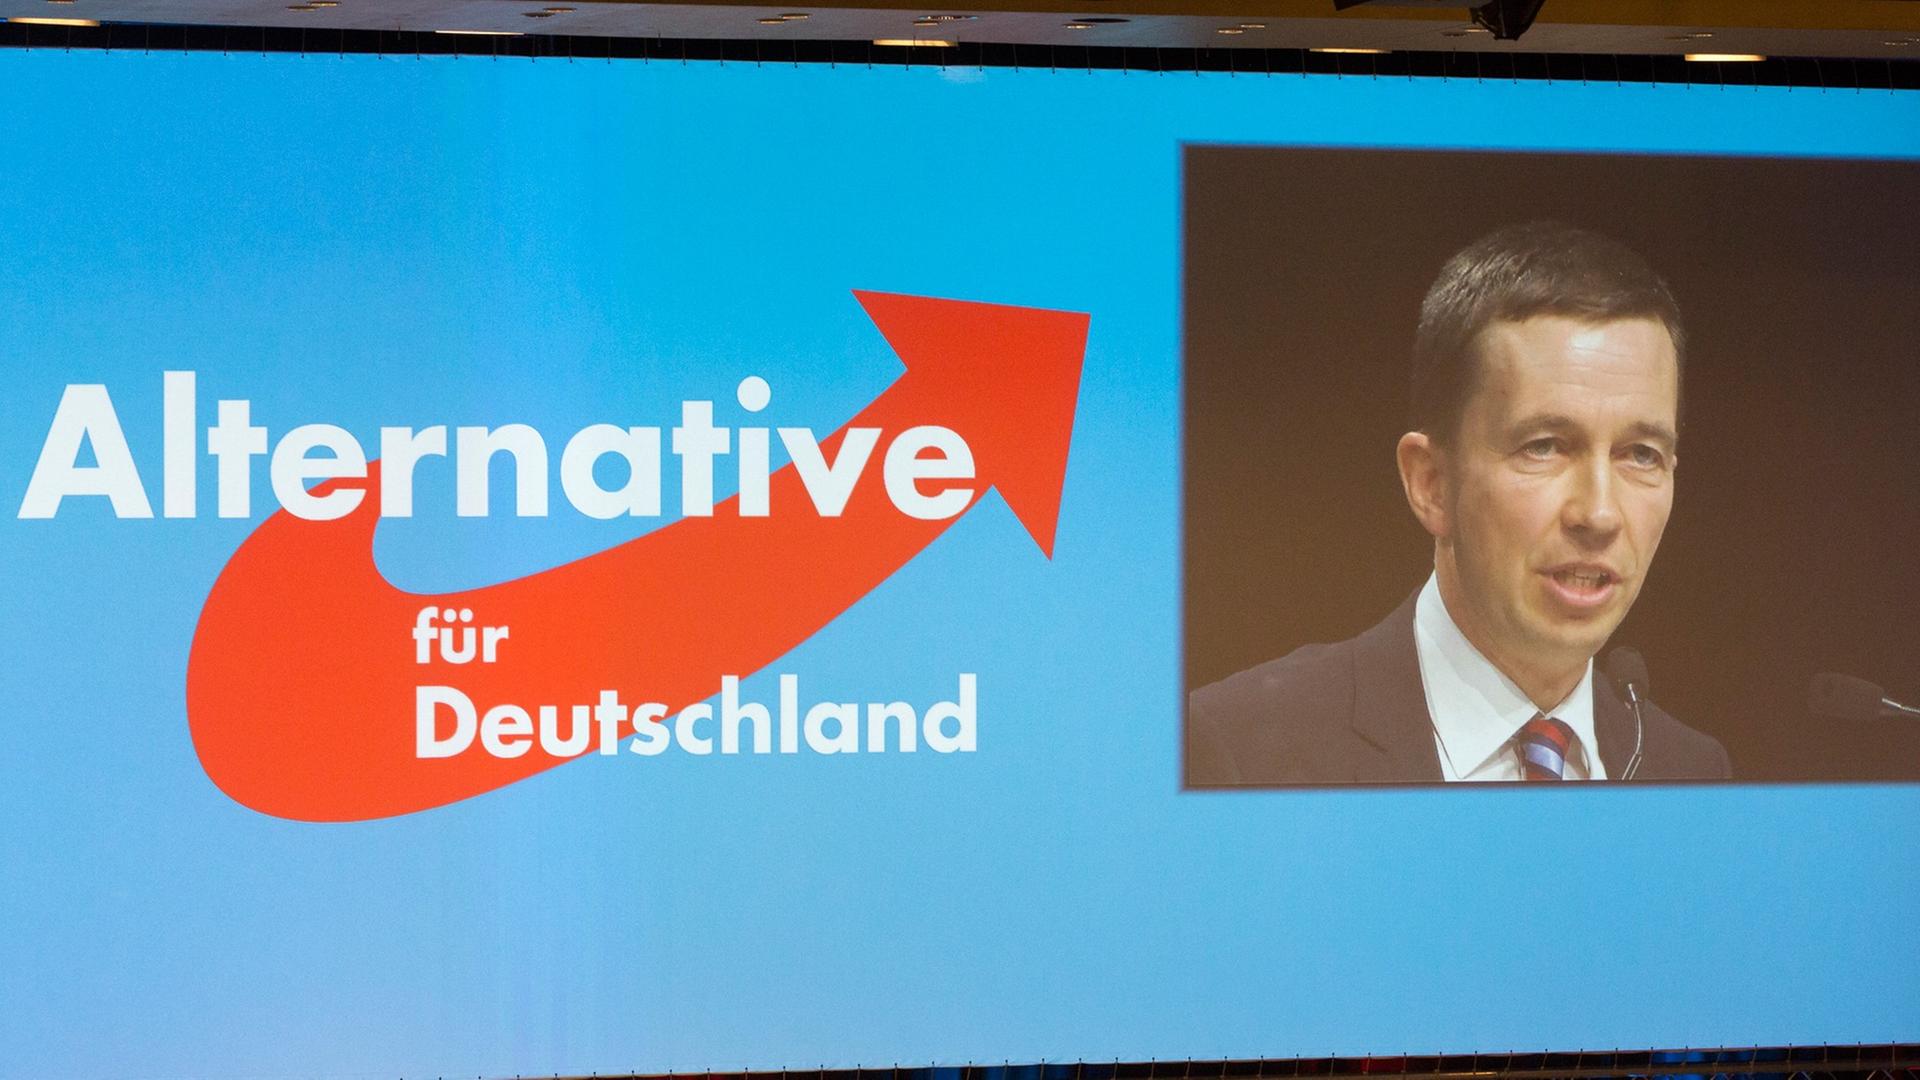 Leinwand mit dem Logo der AfD und einem Bild der Videoübertragung der Rede von Bernd Lucke.